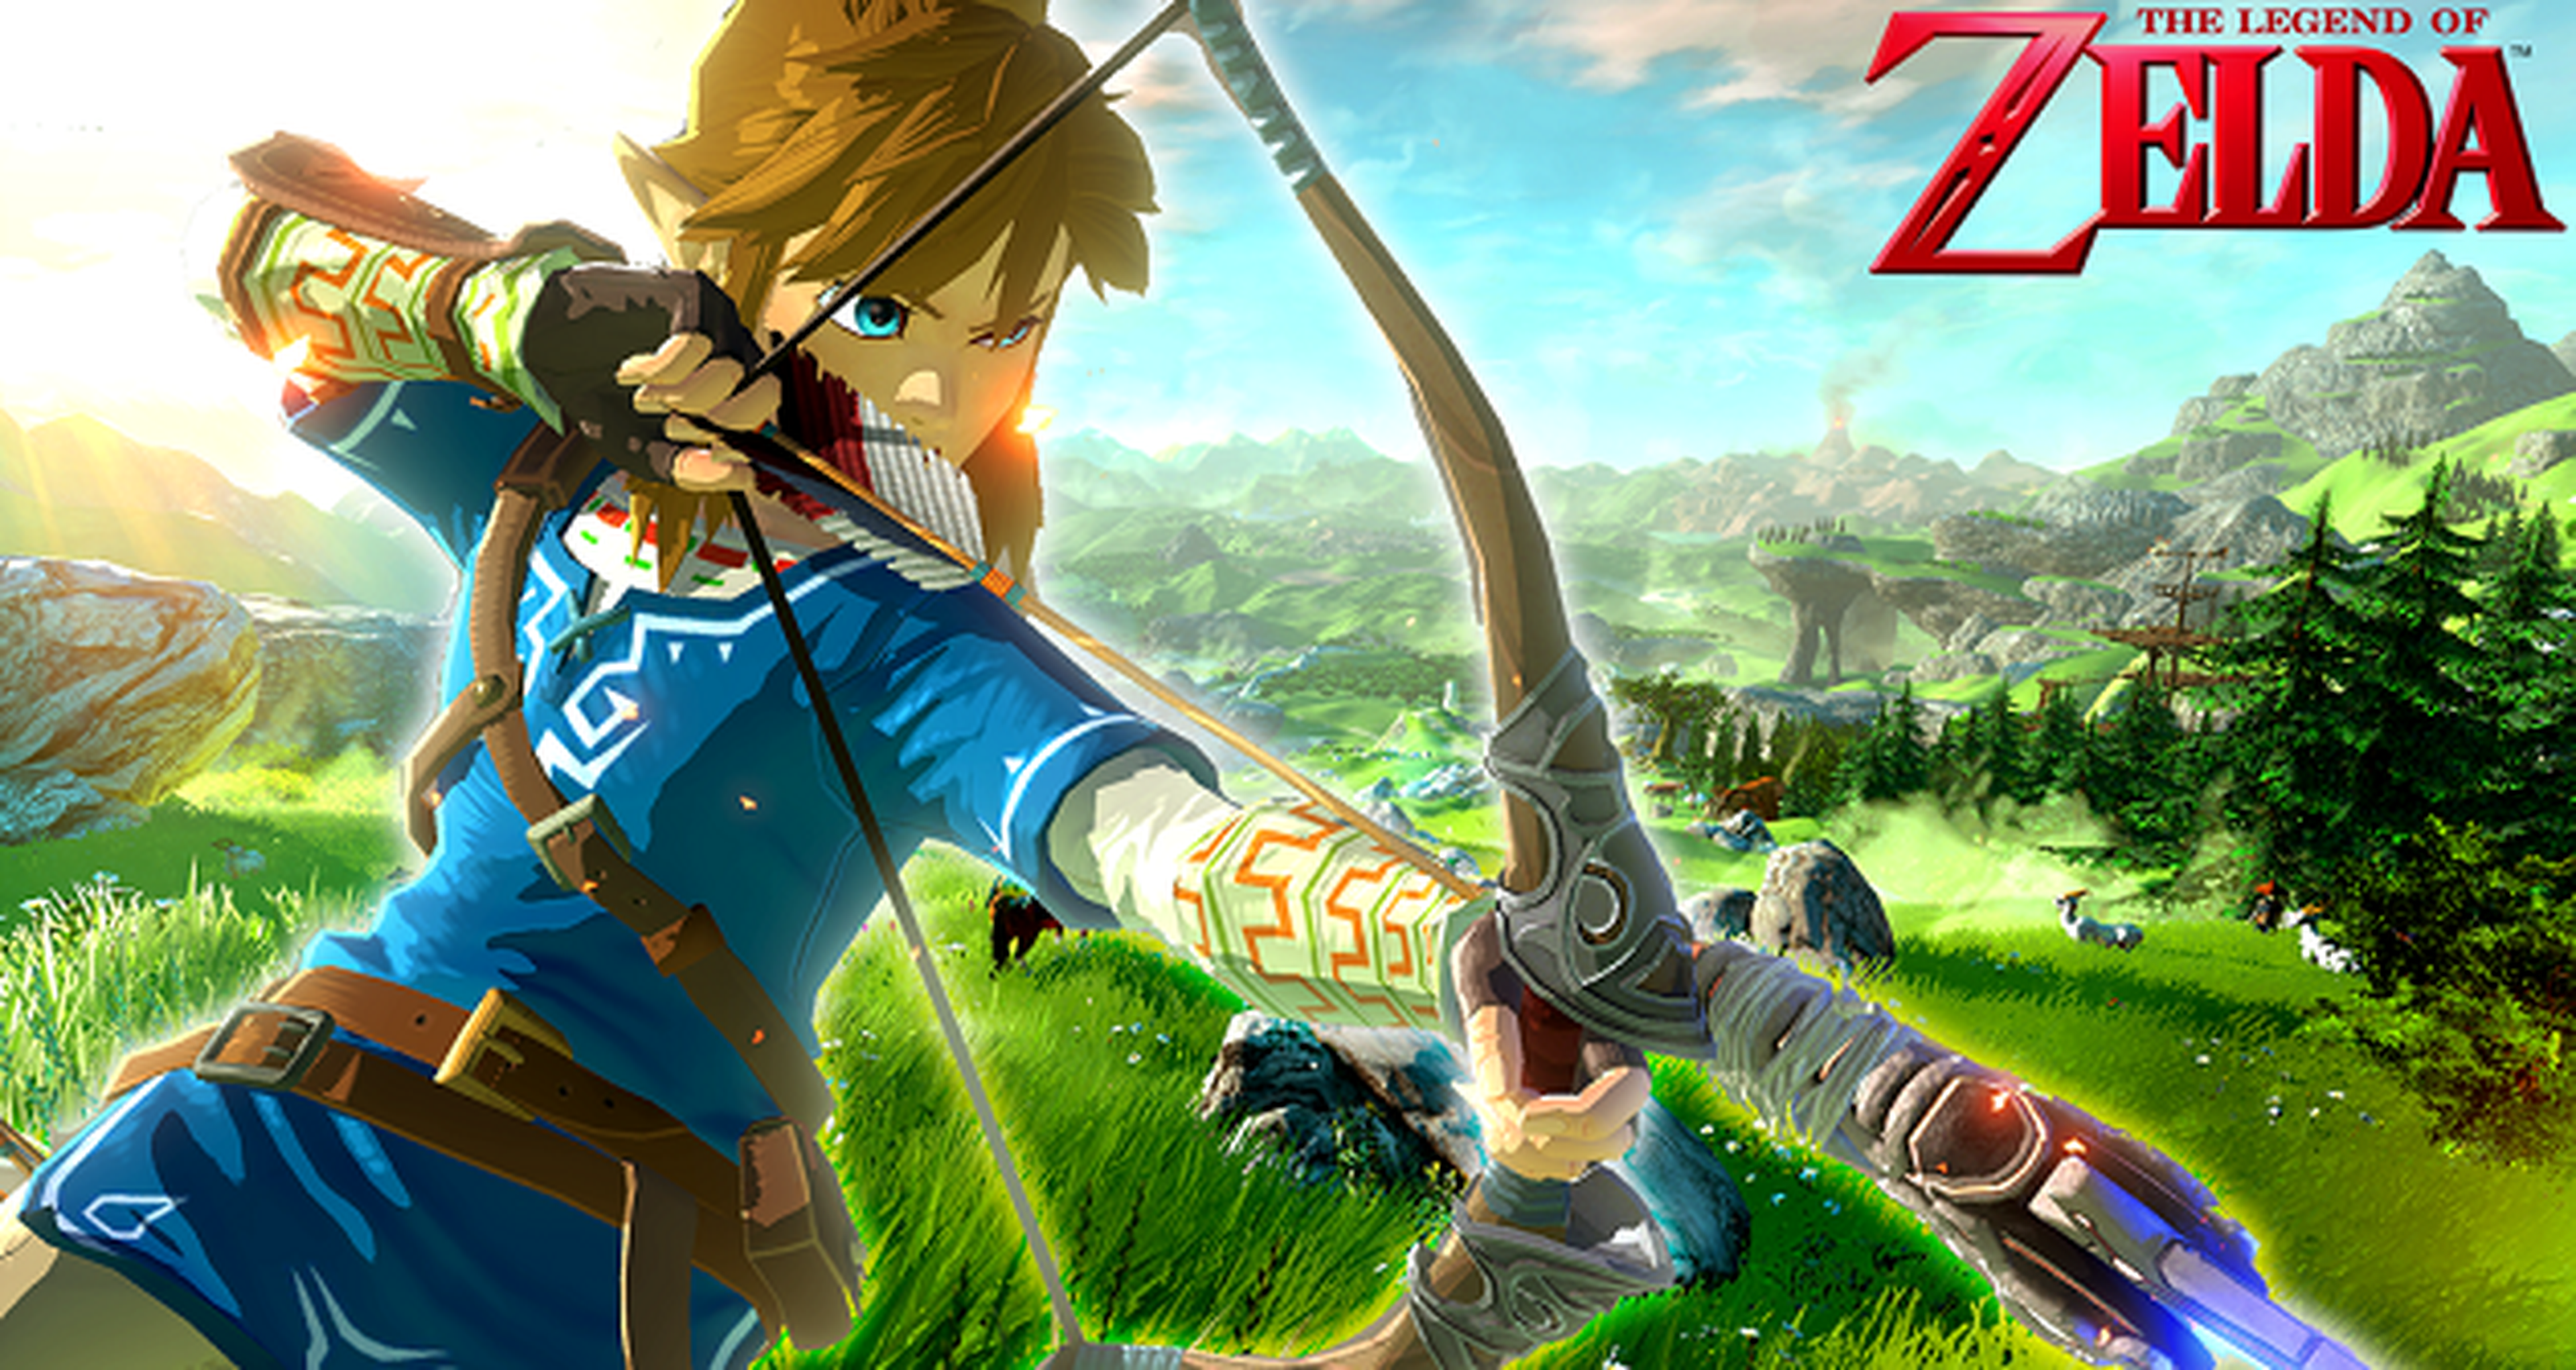 The Legend of Zelda para Wii U no tendrá un mundo abierto al uso